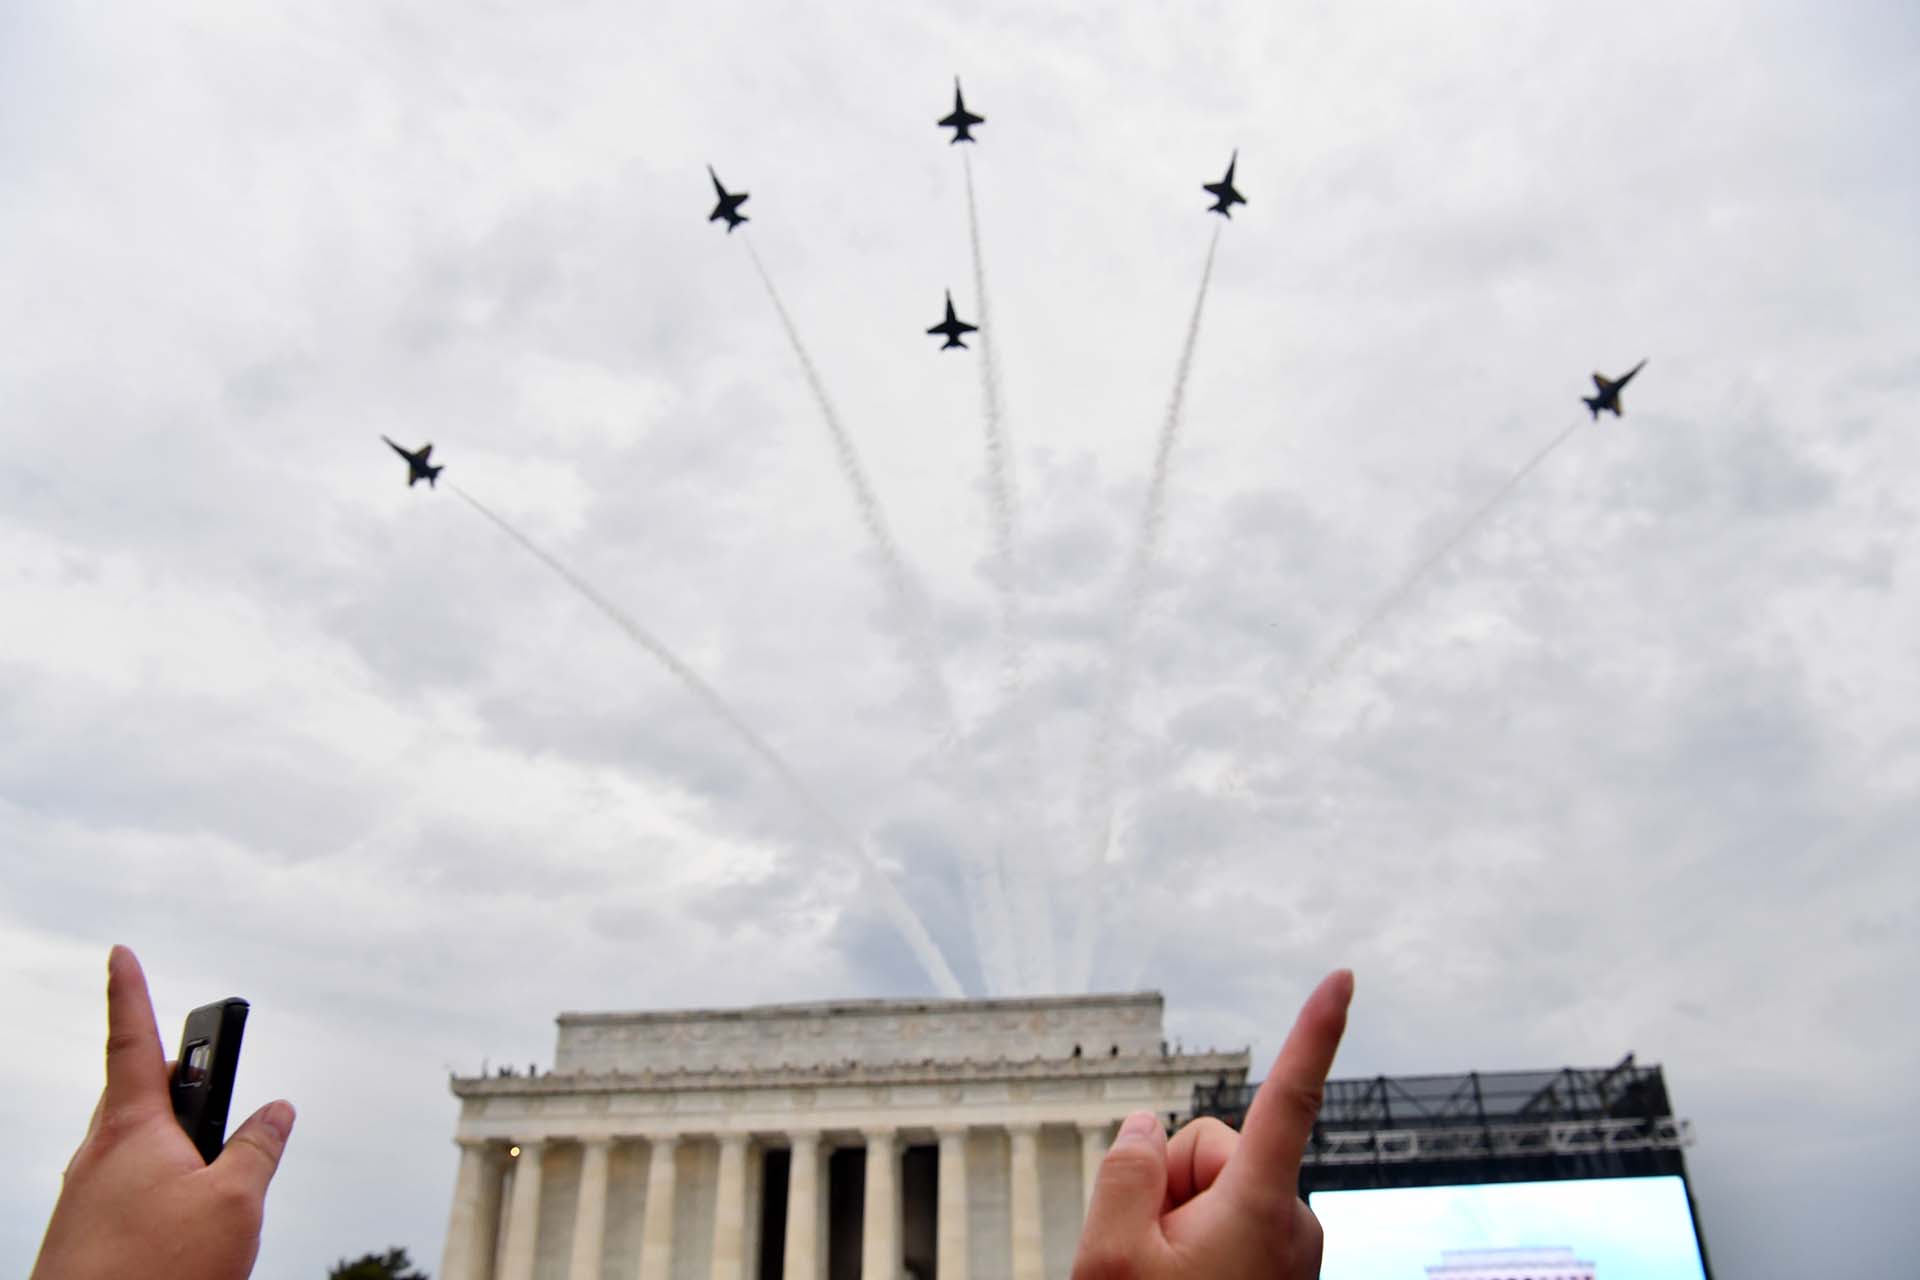 (IMÁGENES DE ARCHIVO) La gente señala al Escuadrón de Demostración de Vuelo de la Marina de los Estados Unidos, los Ángeles Azules, mientras sobrevuelan el Monumento a Lincoln durante el evento del 4 de julio "Salute to America" ​​en Washington, DC, 4 de julio de 2019 (Foto de Nicholas Kamm / AFP)